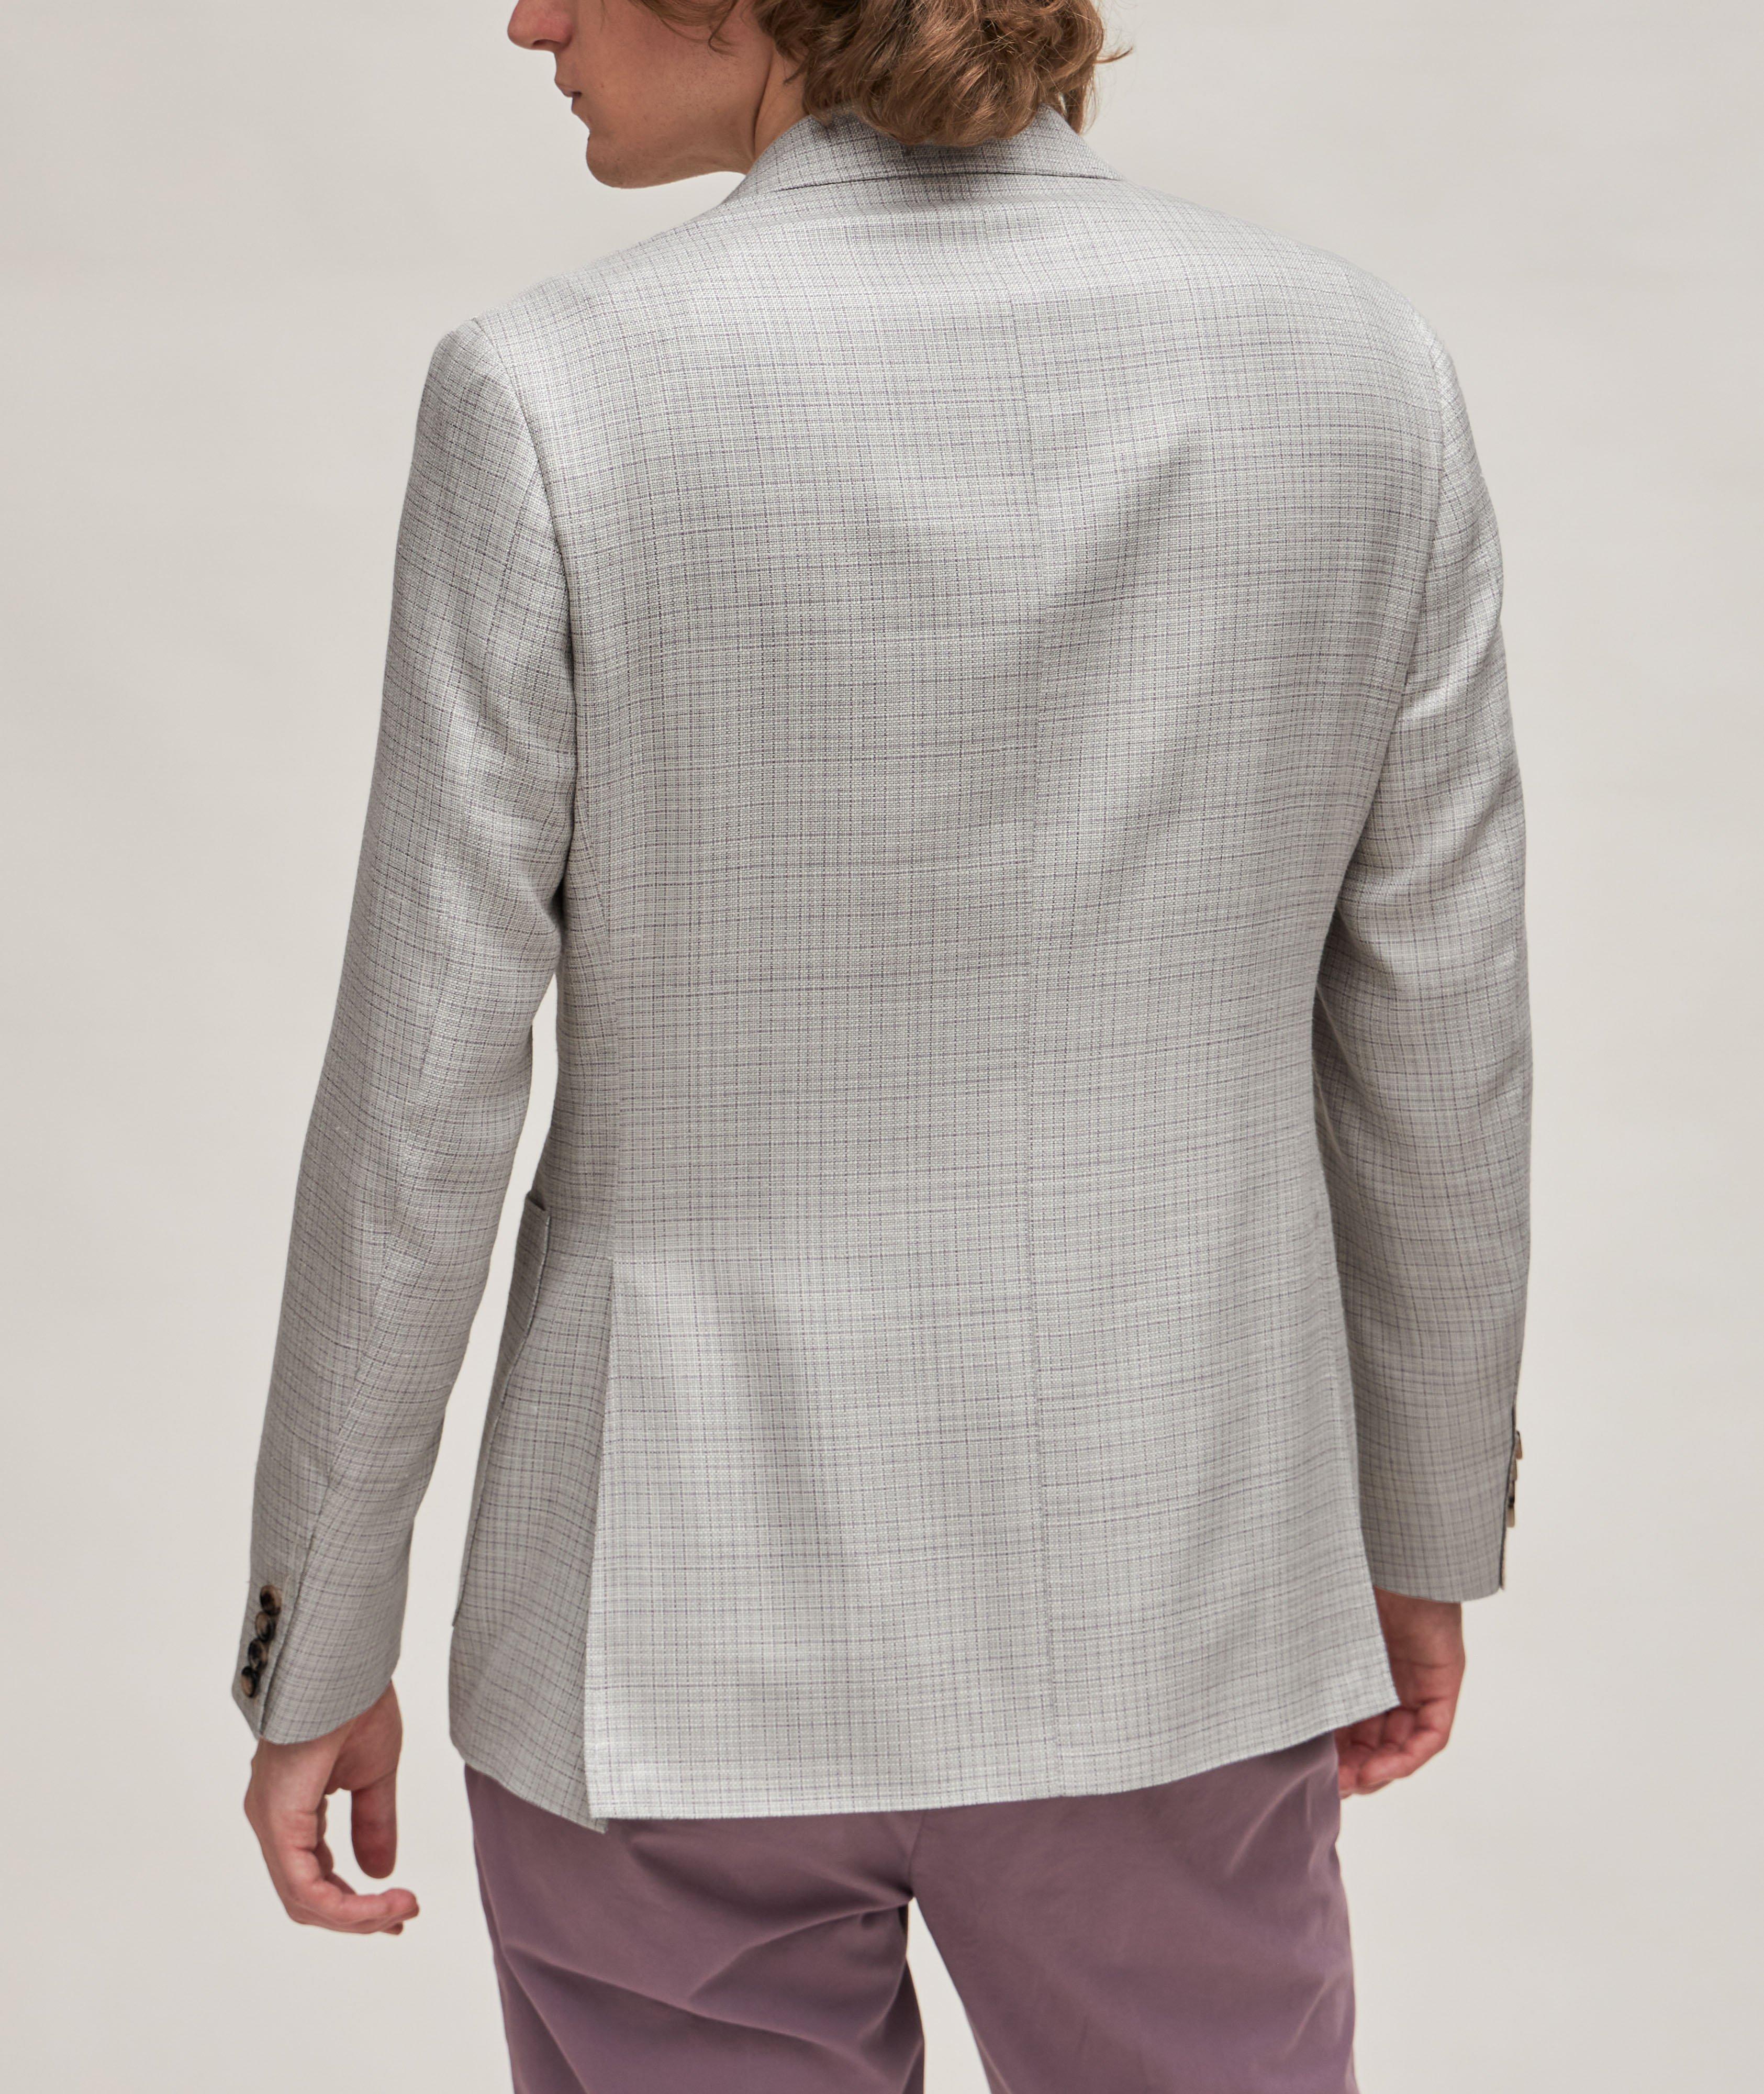 Kei Neat Wool, Silk & Linen Sport Jacket image 2